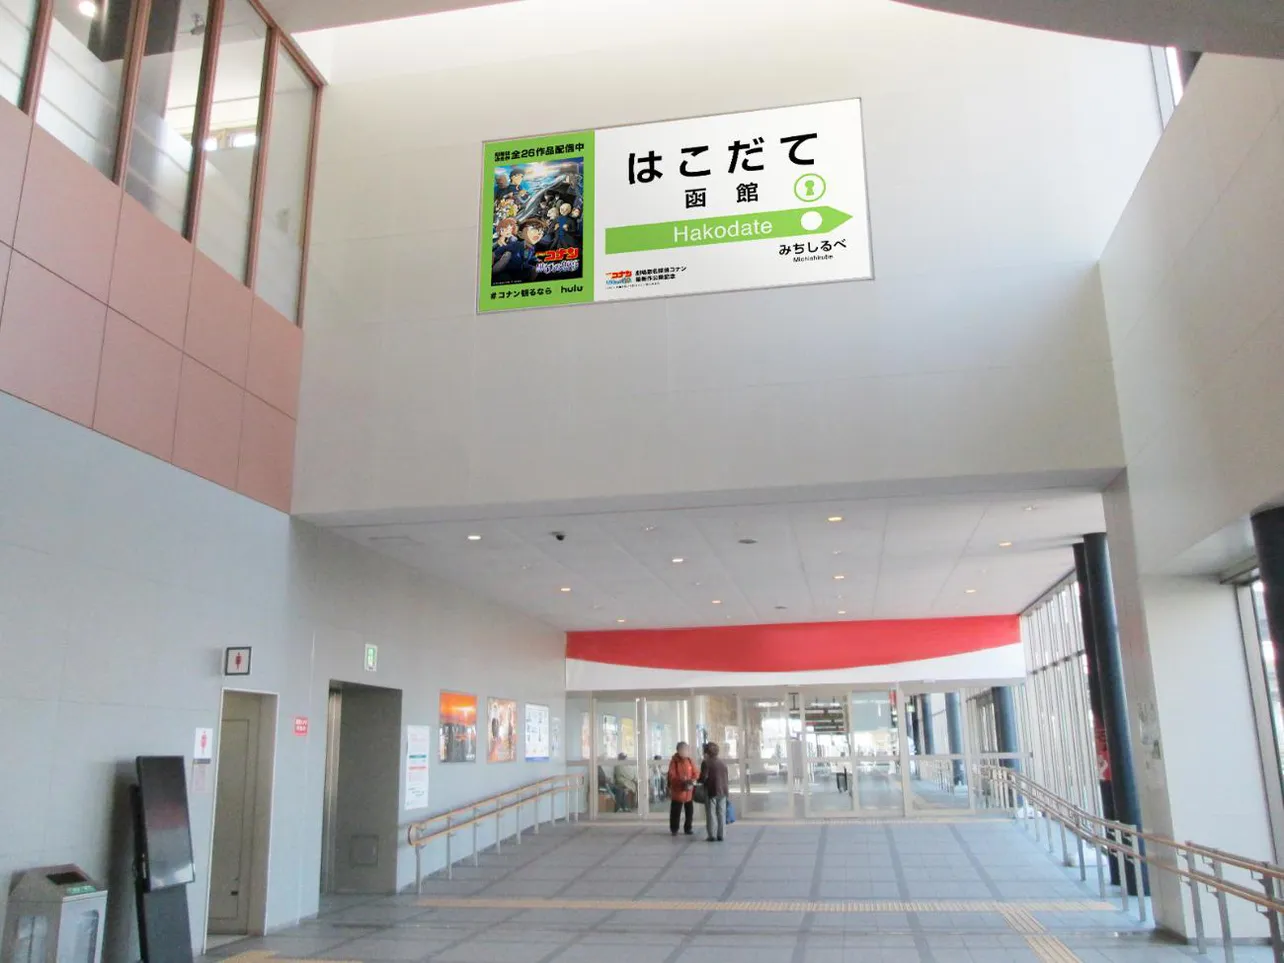 【写真】劇場版最新作の舞台・函館に掲出される駅名標風の広告